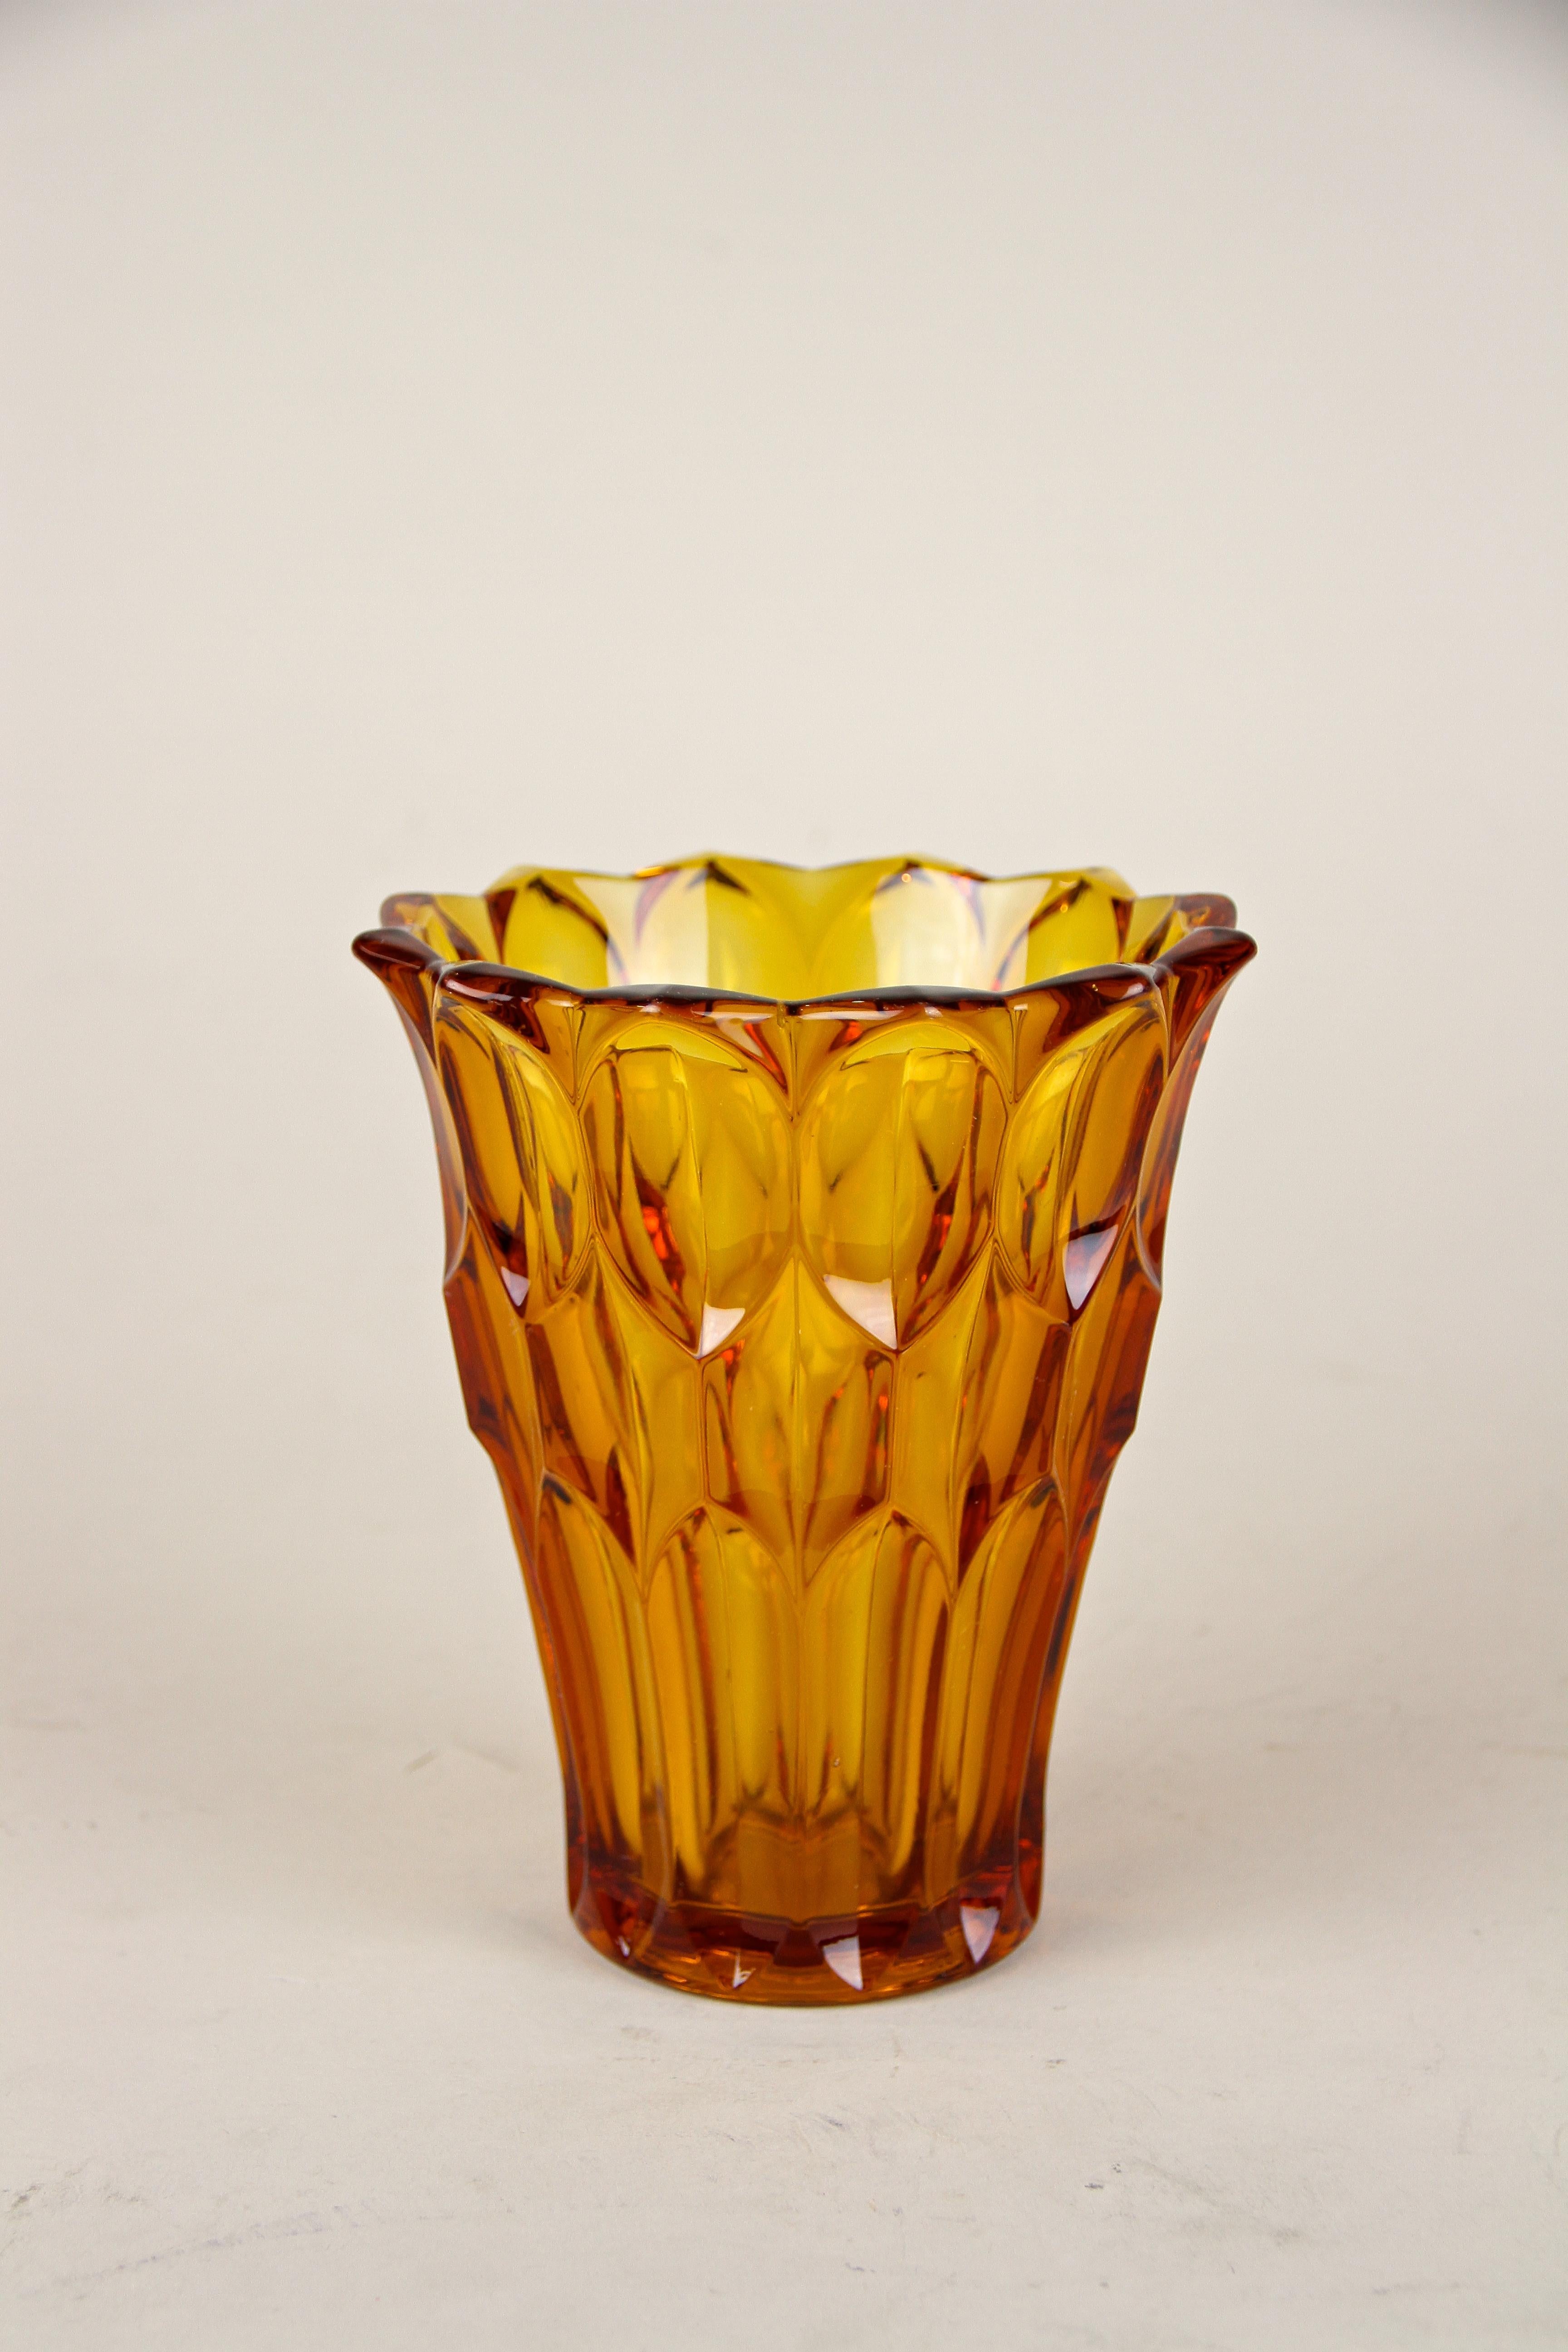 Délicat vase en verre du 20e siècle de la période Art déco, vers 1920 en Autriche. Ce joli vase sait comment convaincre, un morceau de verre très bien conçu, orné d'une coupe spéciale qui construit un motif fantastique selon l'incidence de la